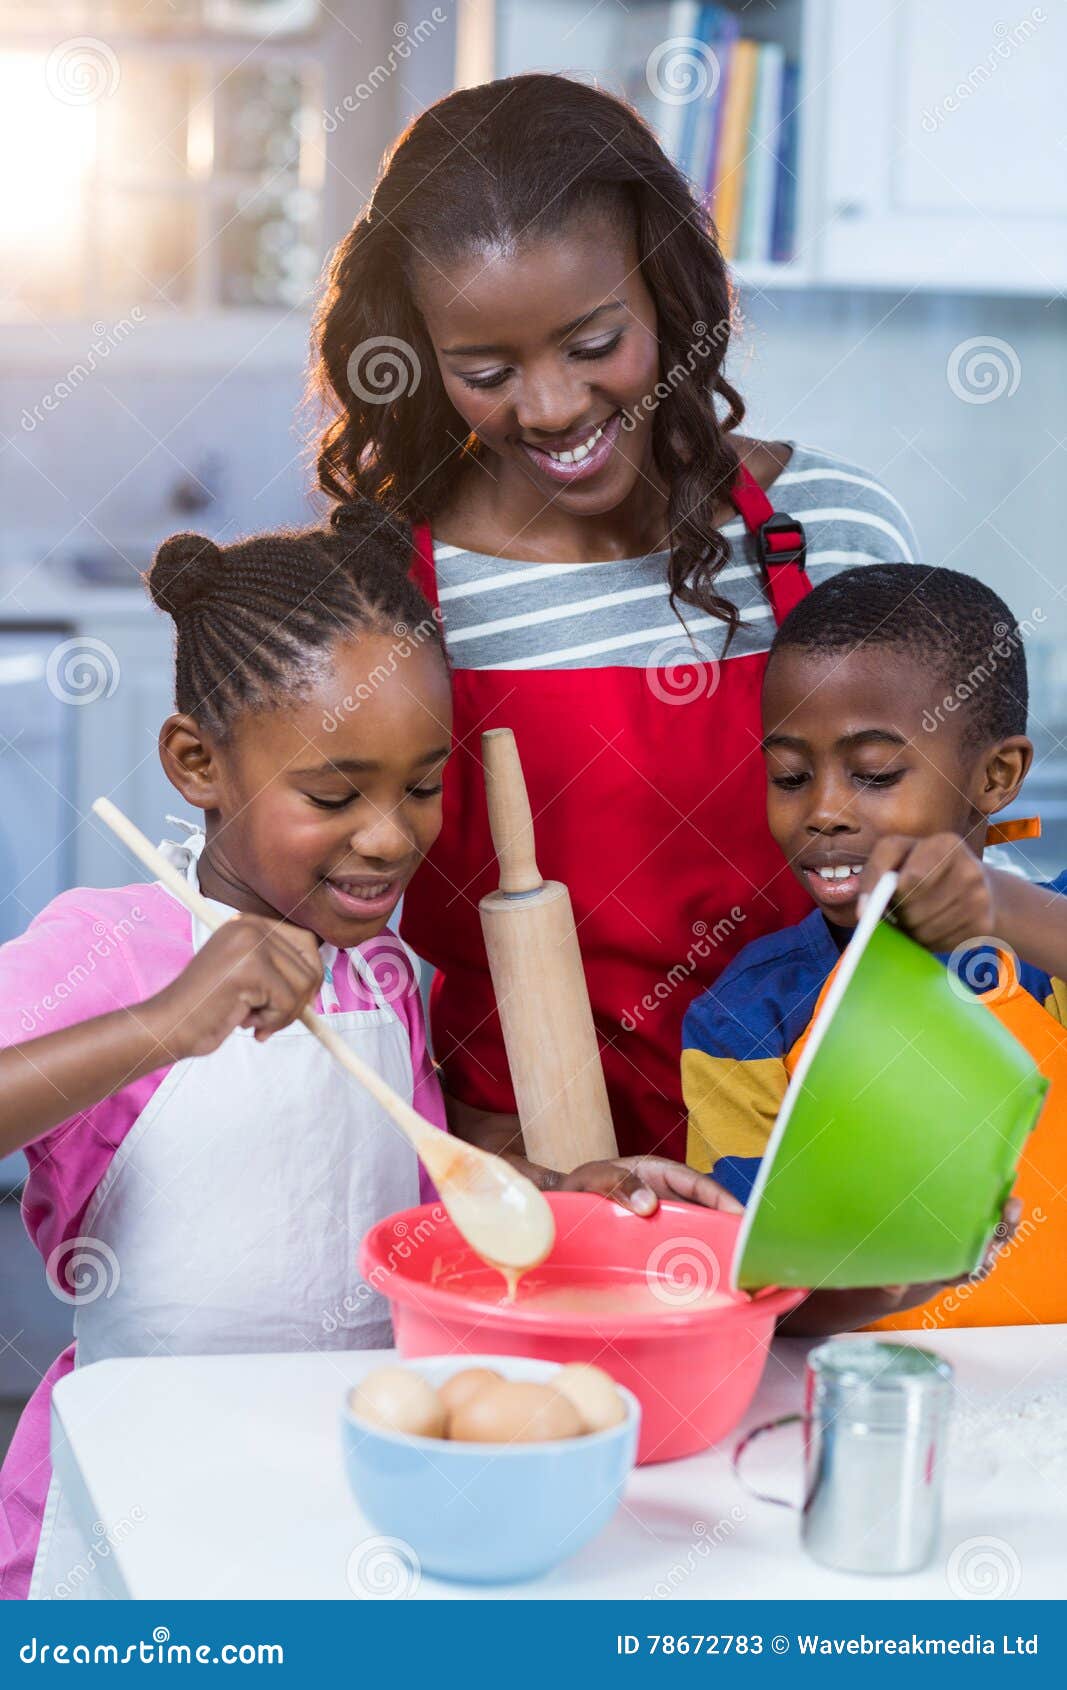 Children preparing cake with their mother in kitchen